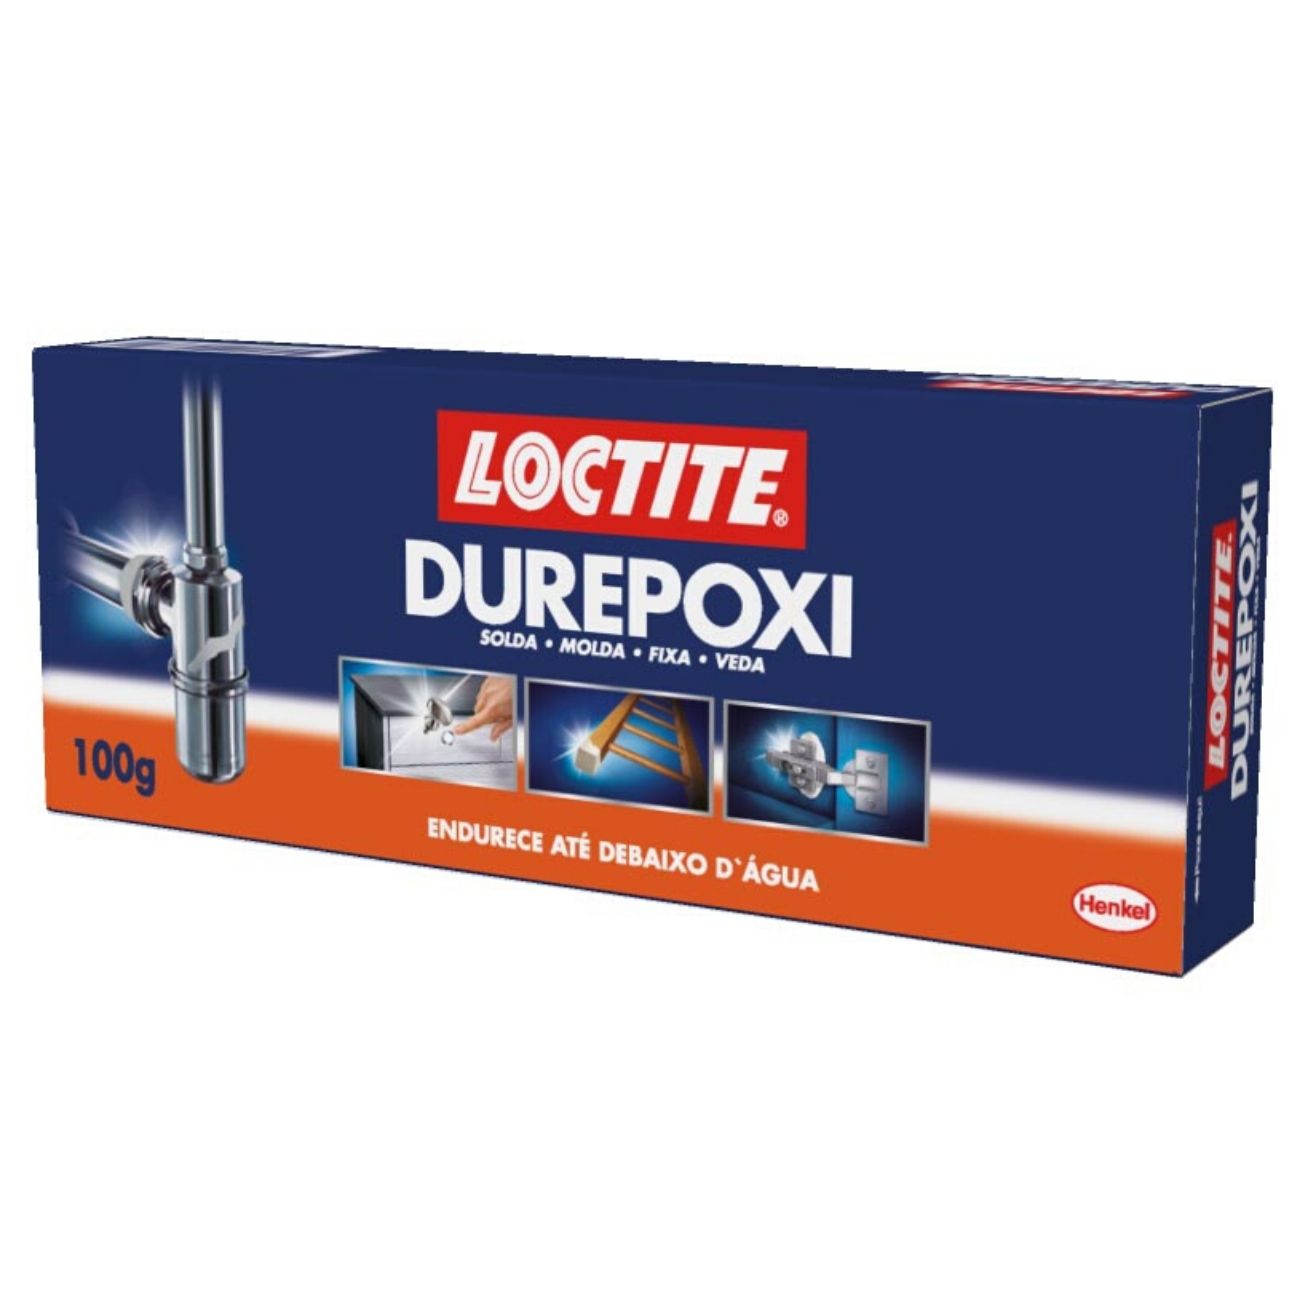 Loctite Durepoxi 100g